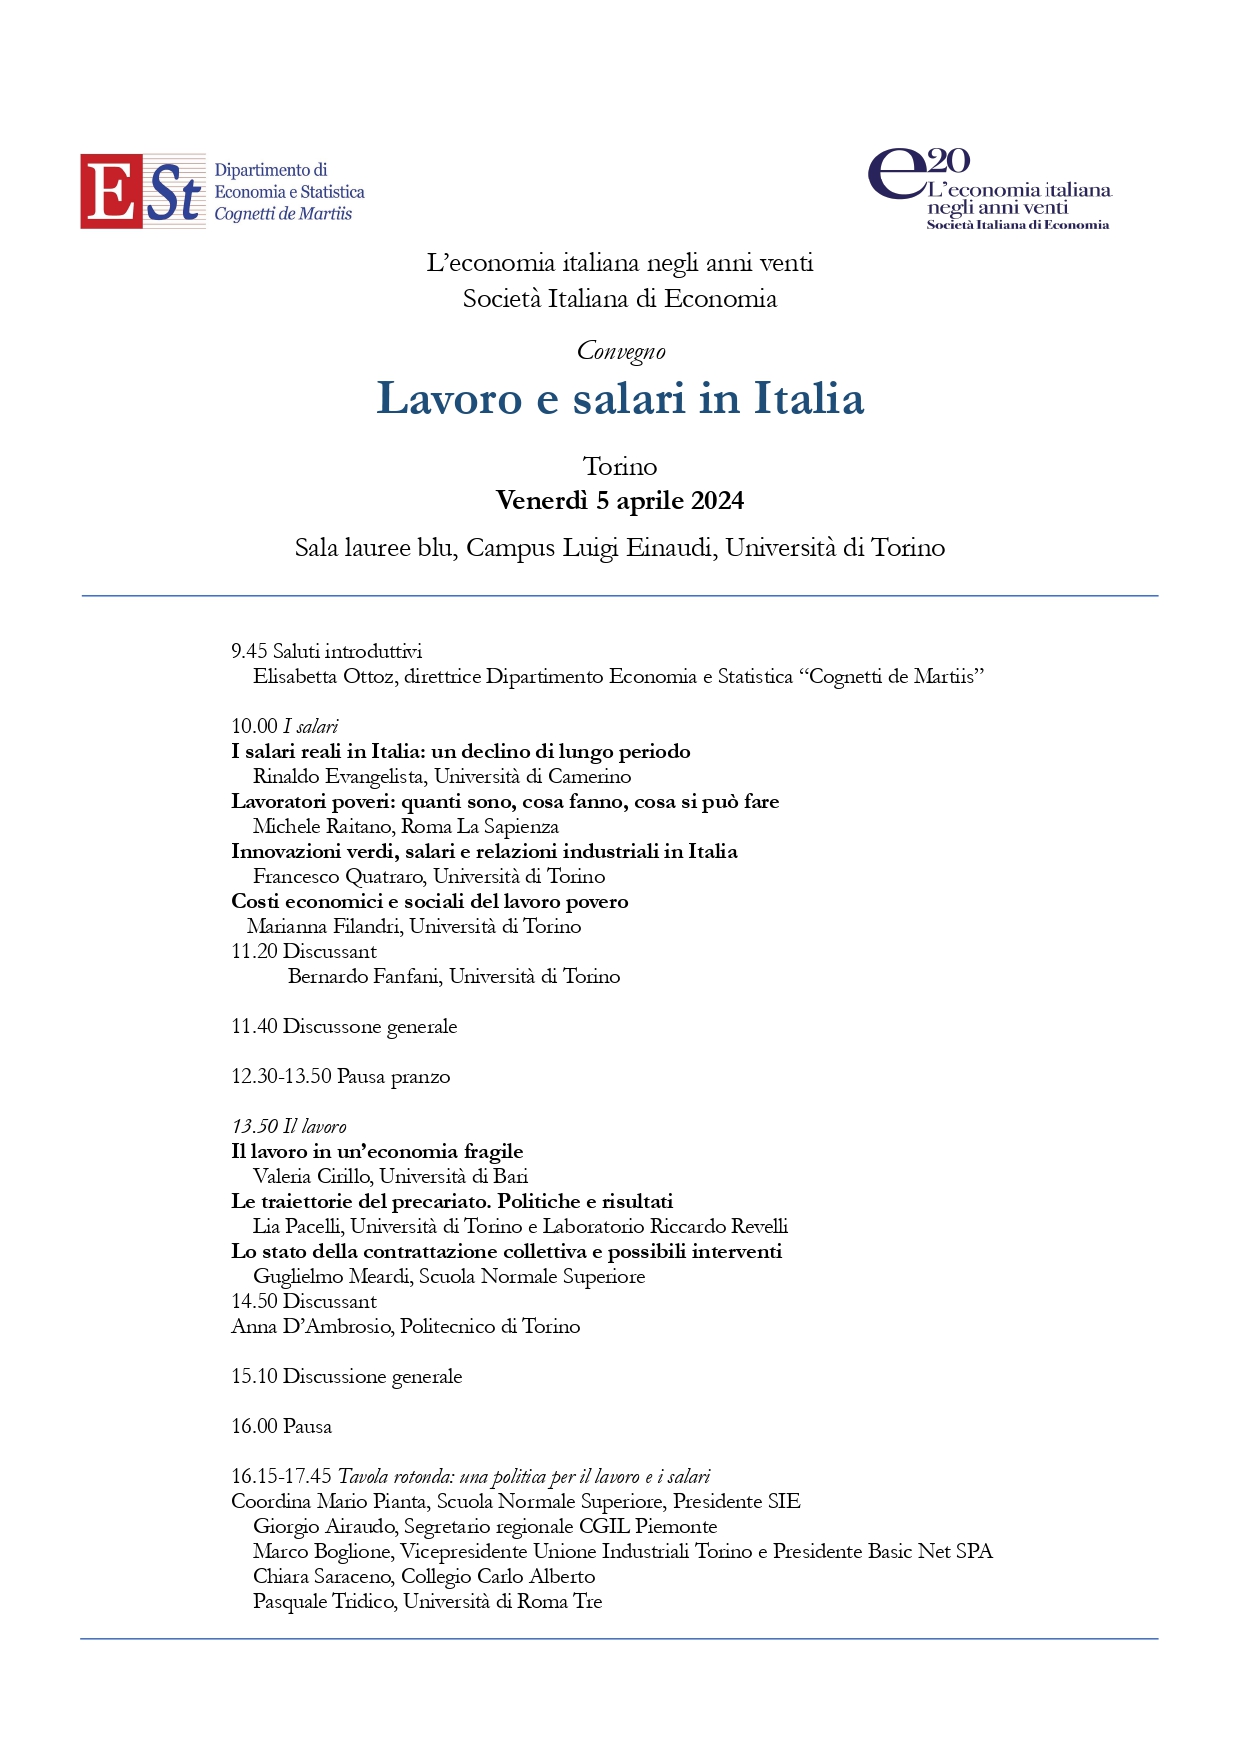 locandina lavoro e salari in italia 0 page 0001